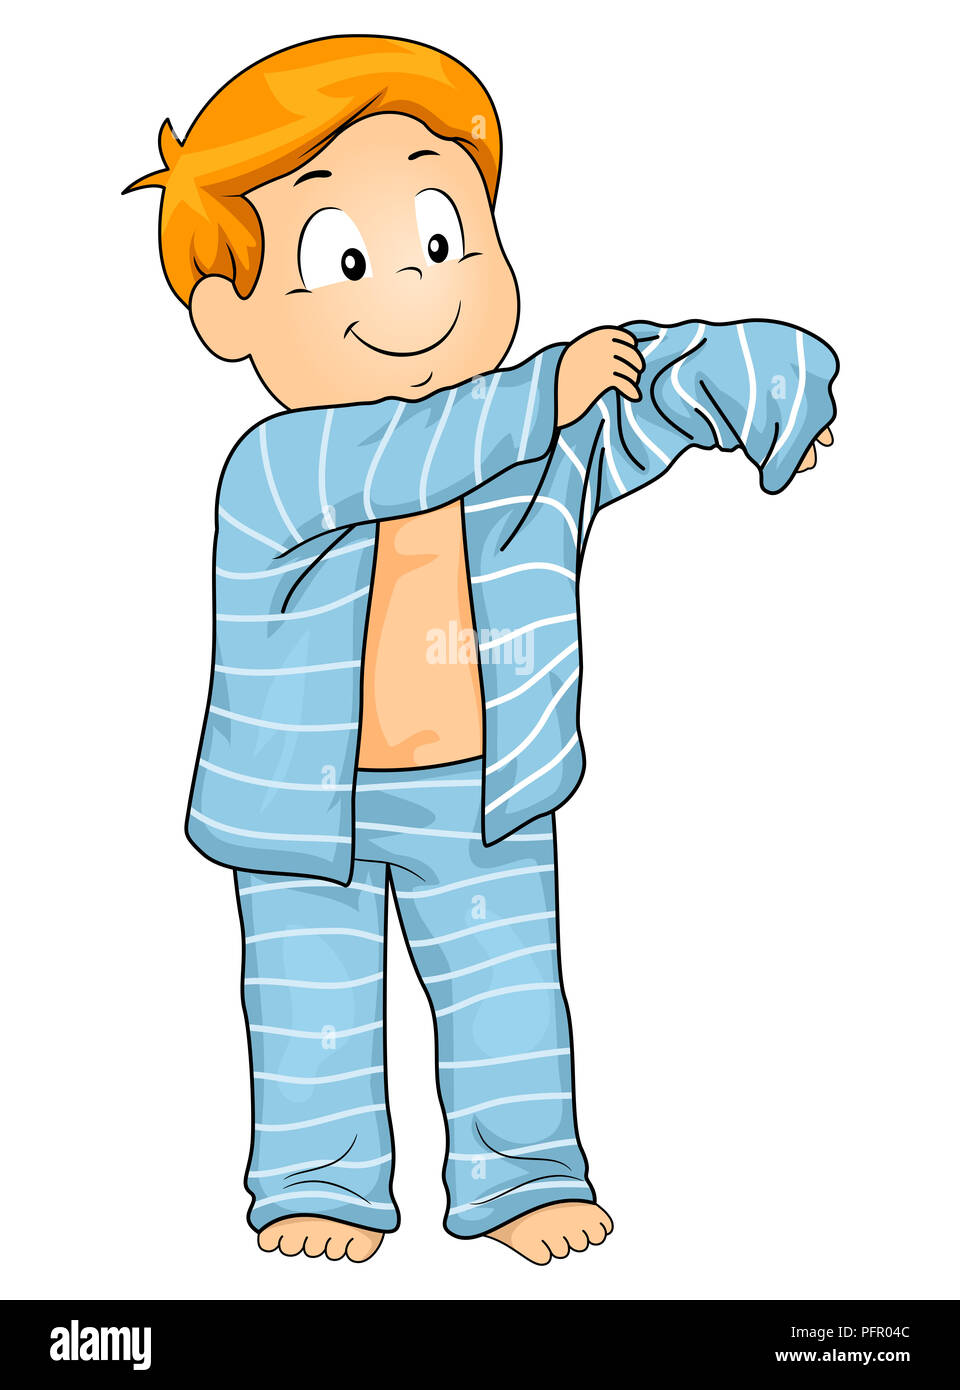 Coloriage Un Enfant Met Son Pyjama Pour Se Preparer A Dormir Dessin ...